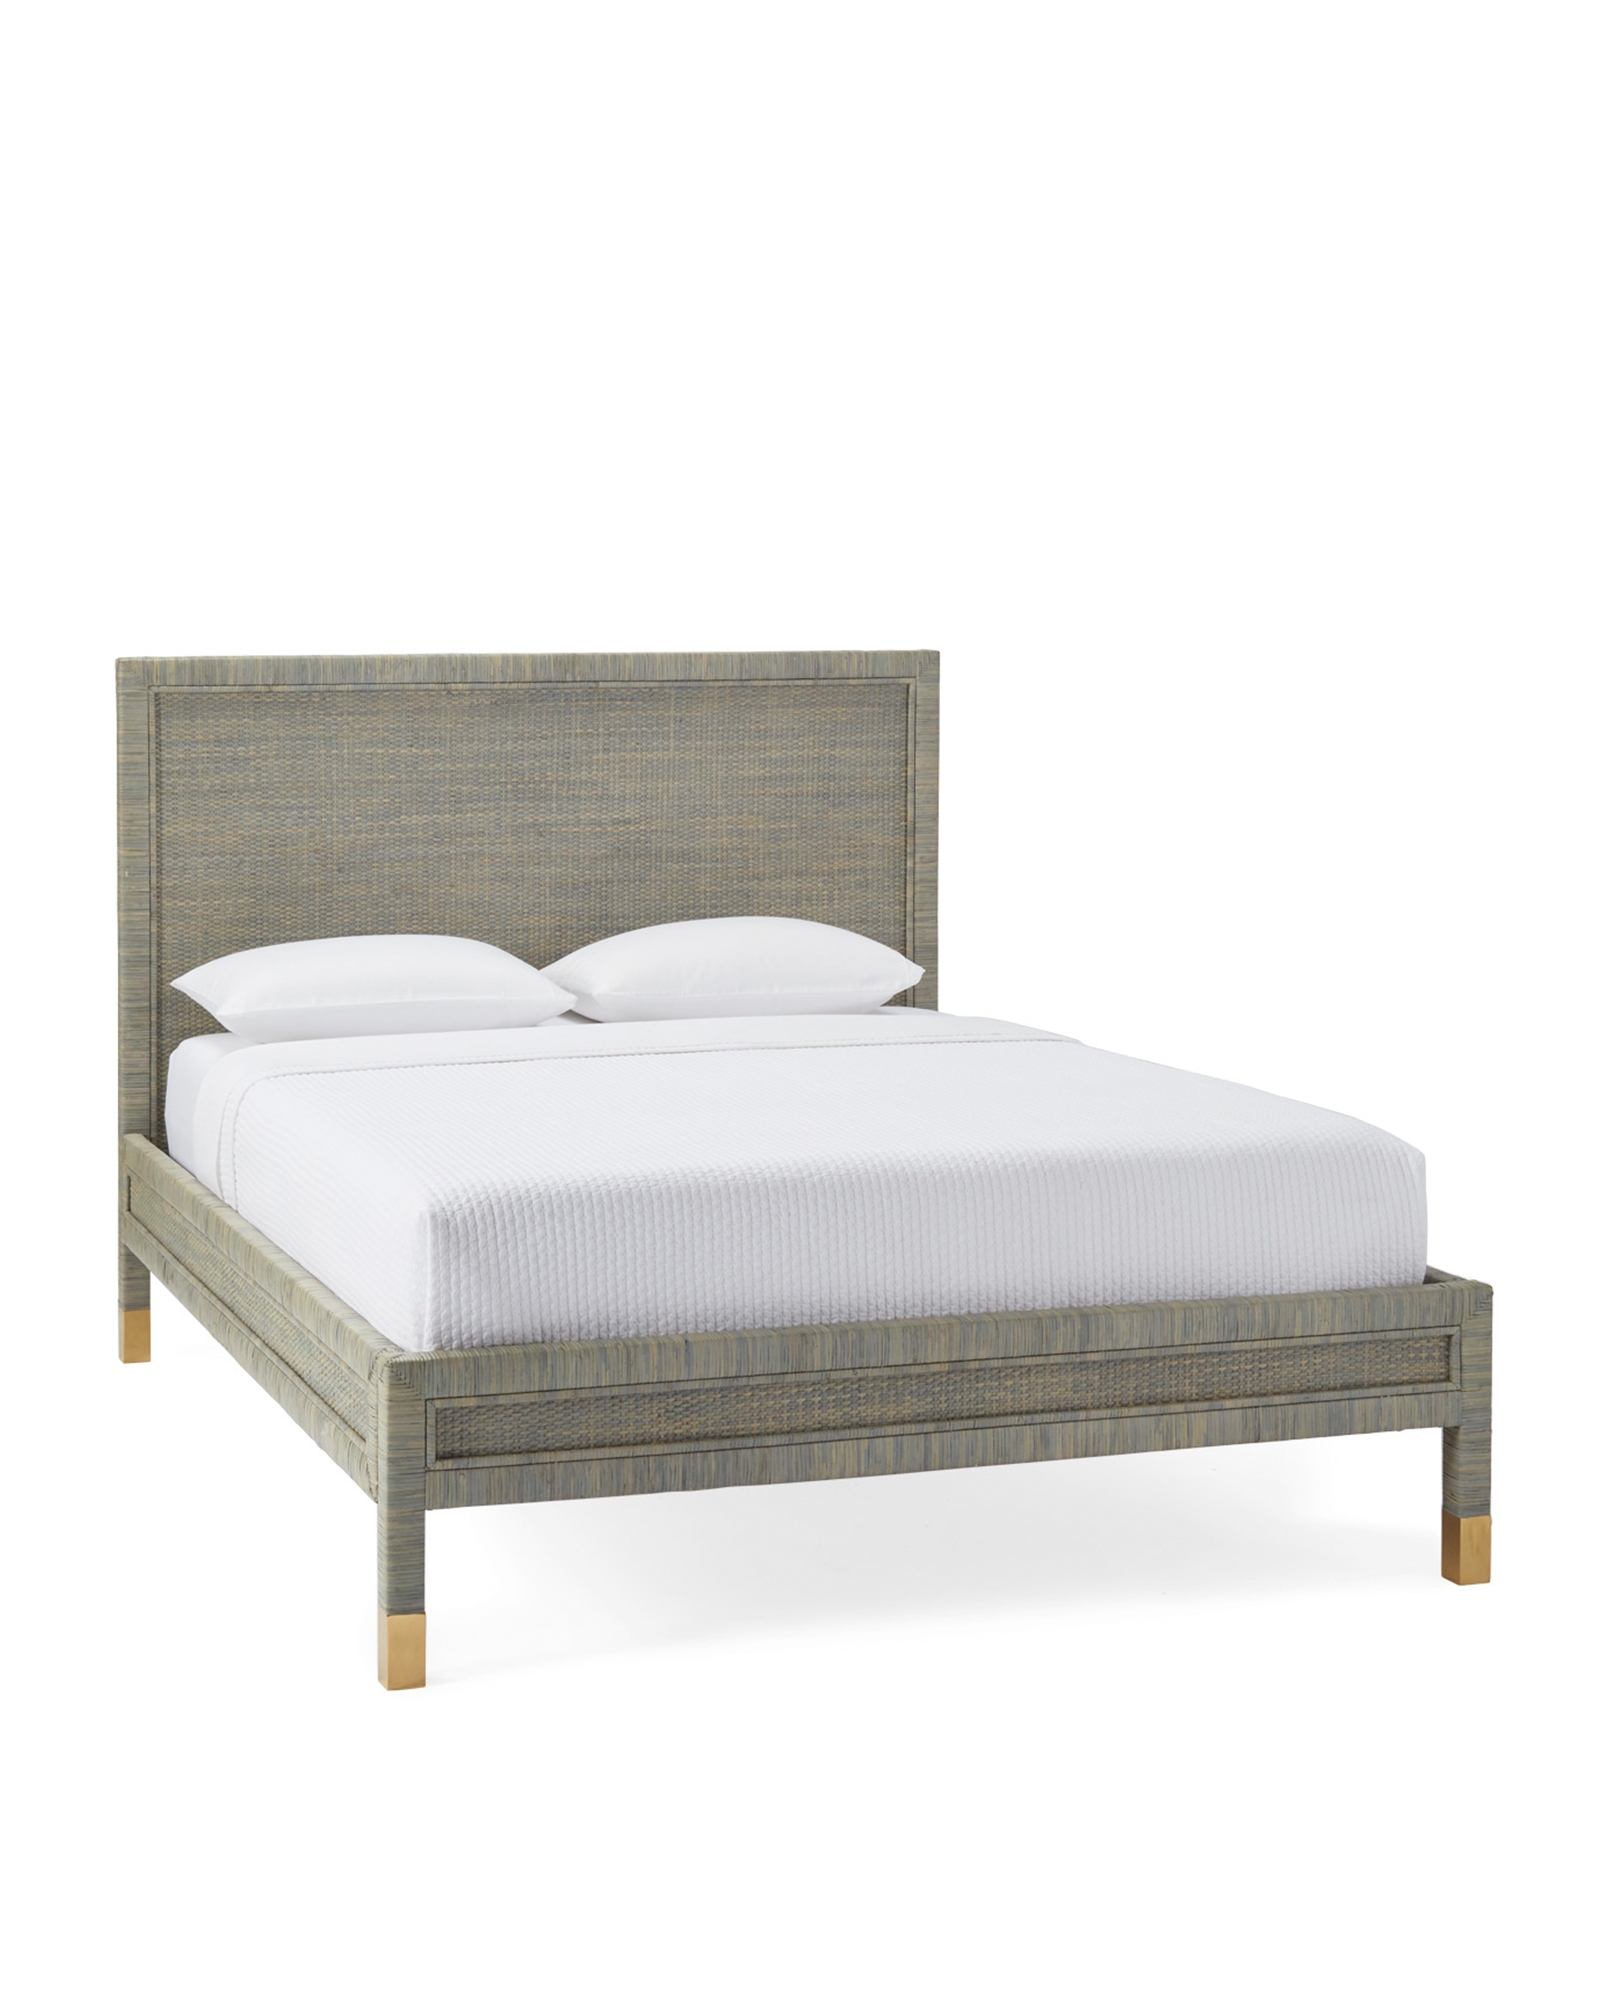 Balboa Queen Bed - Mist - Image 0